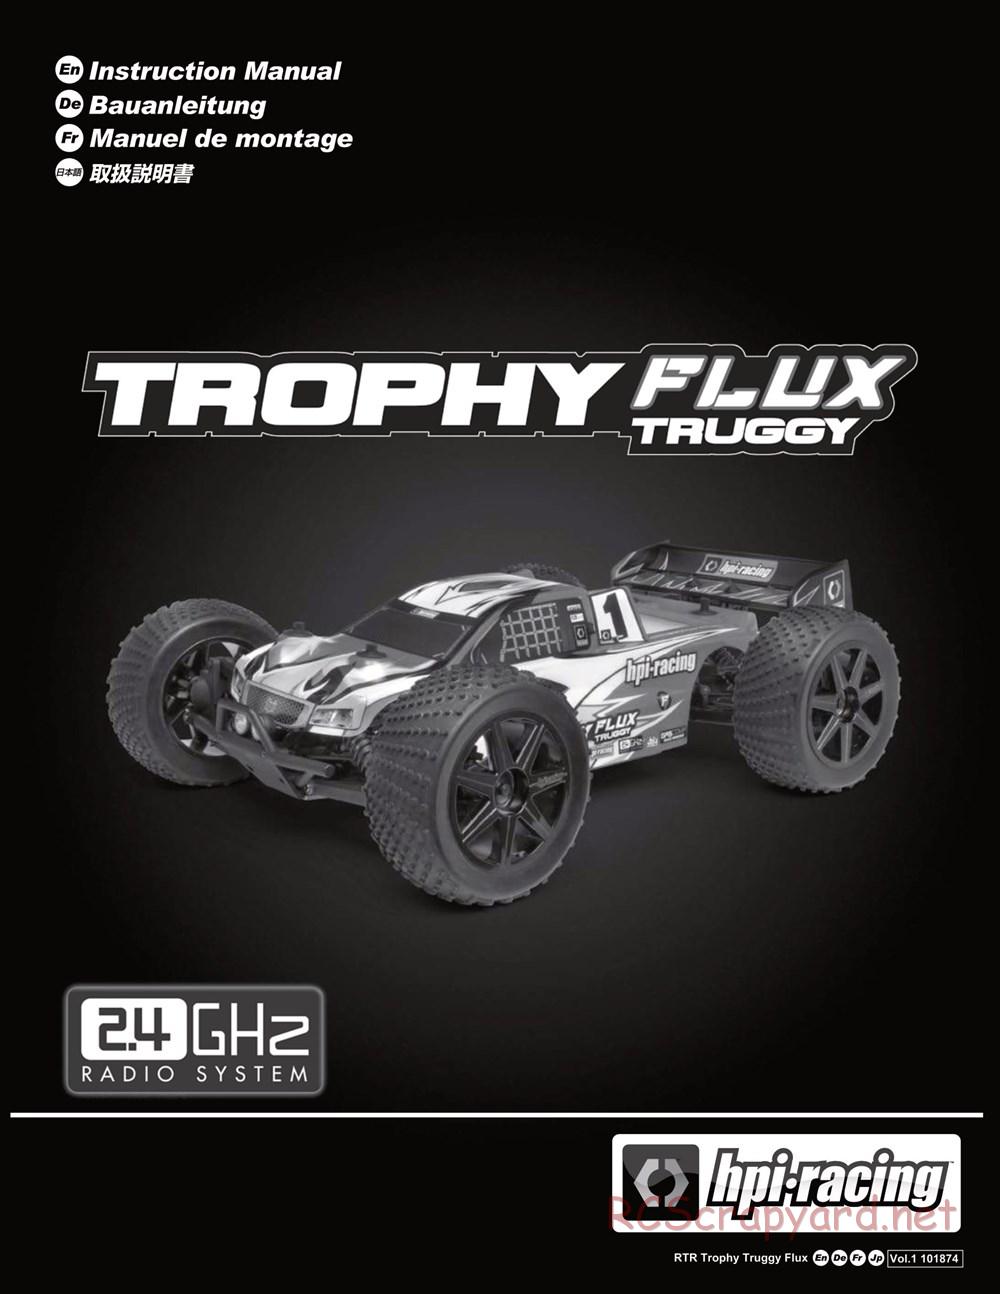 HPI - Trophy Flux Truggy - Manual - Page 1